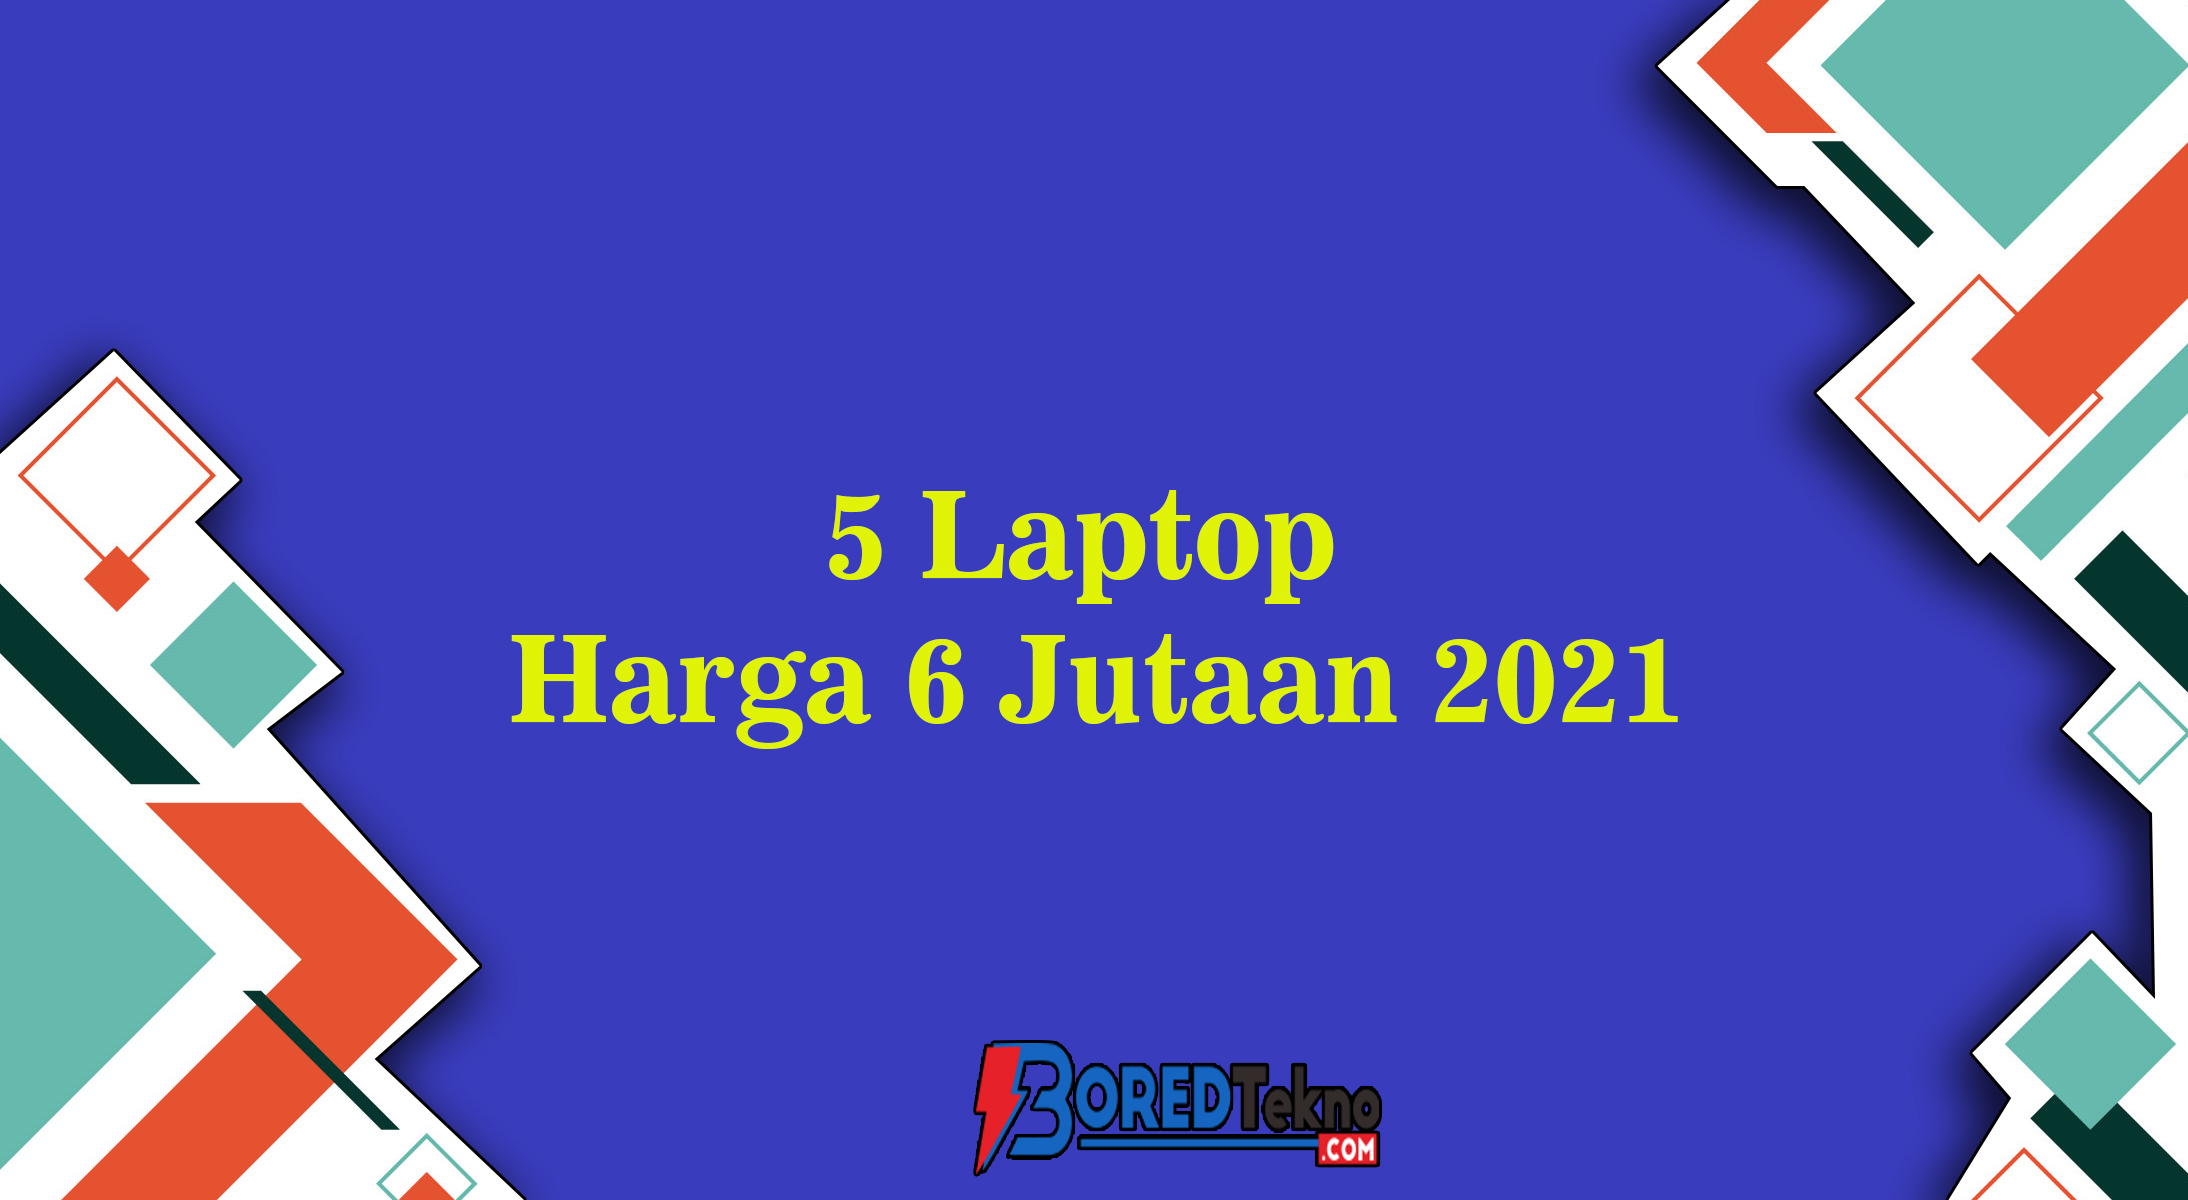 5 Laptop Harga 6 Jutaan 2021